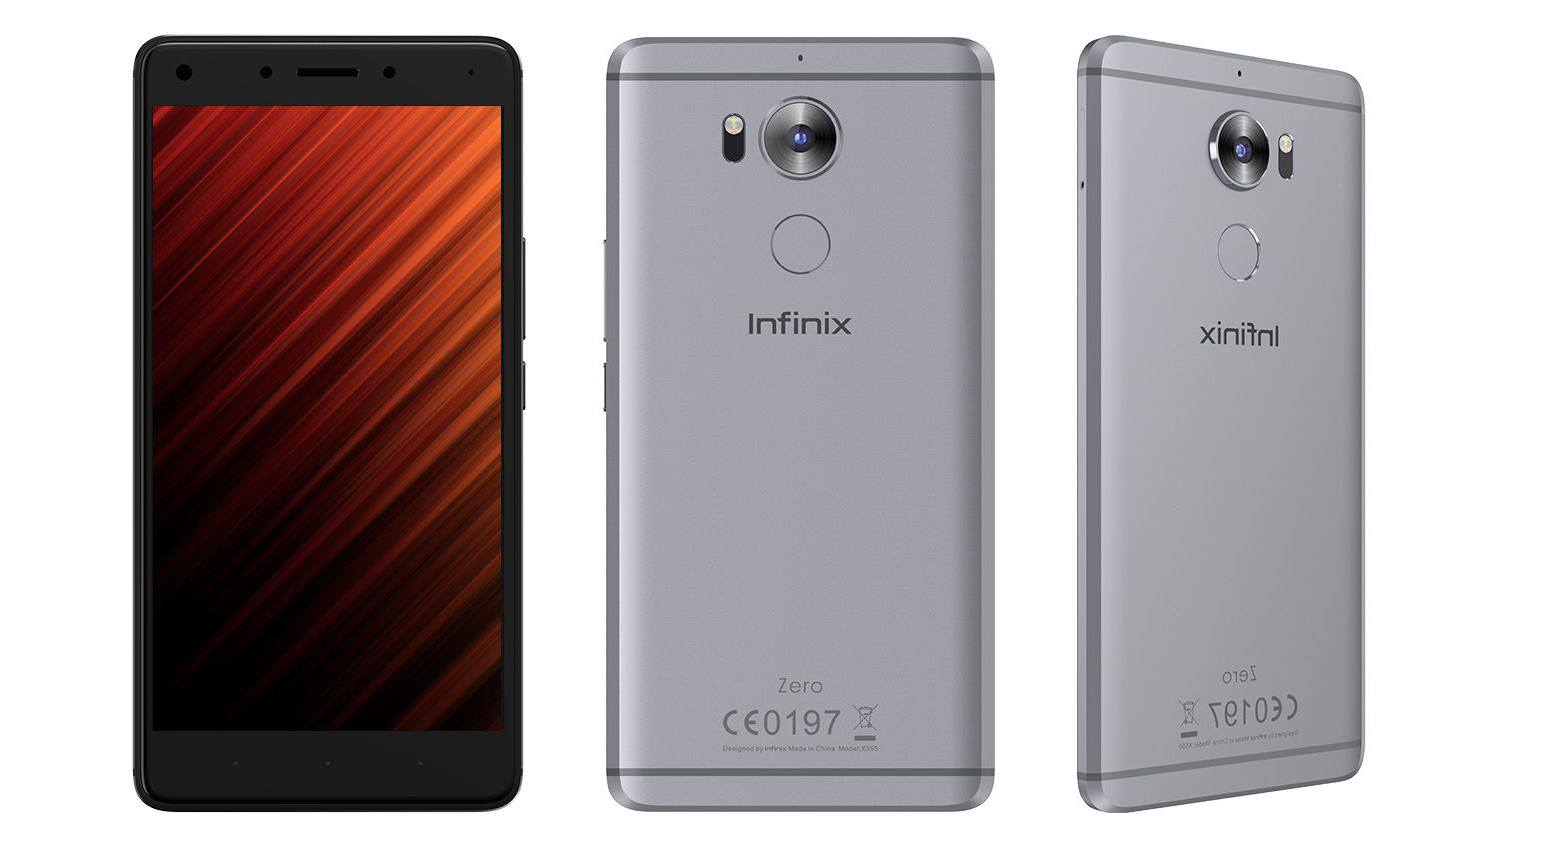 رسمياً انفينكس تطلق هاتفها الذكي Infinix Zero 4 plus في الاسواق المصرية